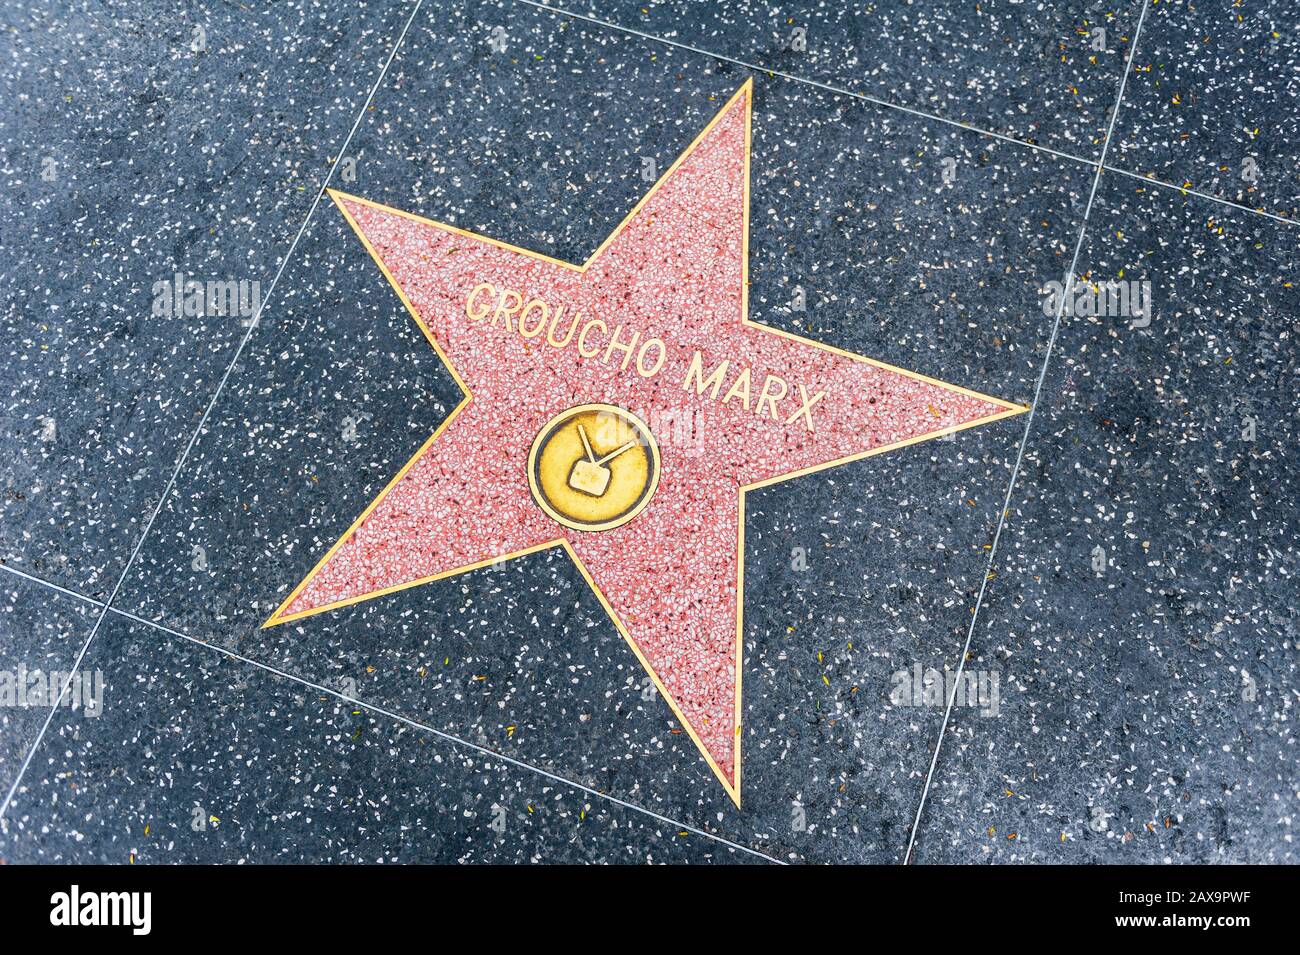 Groucho Marx Star auf Hollywood Walk of Fame in Hollywood, Kalifornien, USA. Er.war ein US-amerikanischer Schauspieler und Komiker, der von 1905 bis 1976 aktiv war. Stockfoto